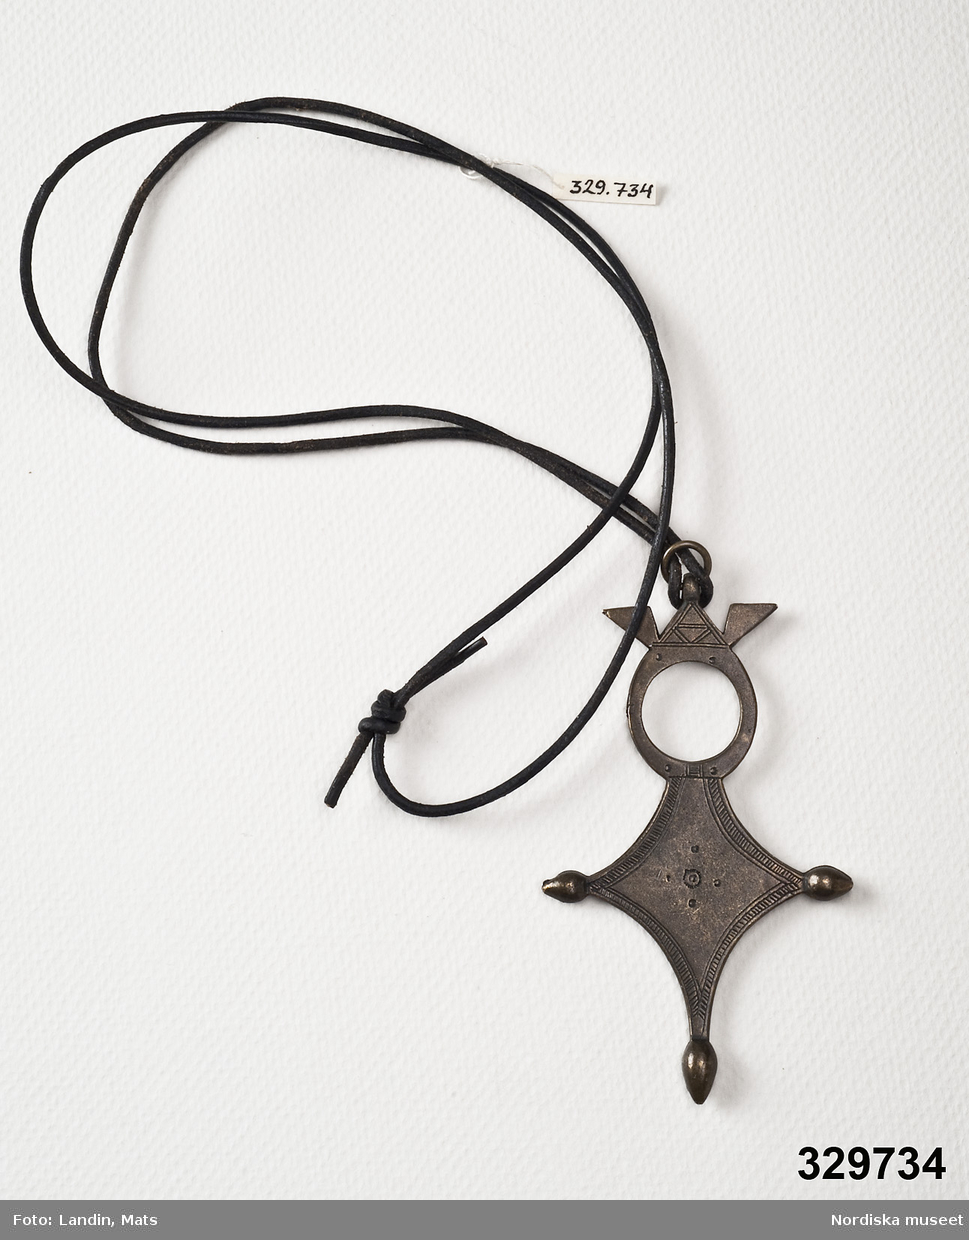 Halsband, smal svart läderrem med hänge i mörk metall korsformig med rund genombruten överdel. Stämpel med texten "Scooter Paris" på baksidan.
/Zingoalla Rosenqvist 2009-02-05